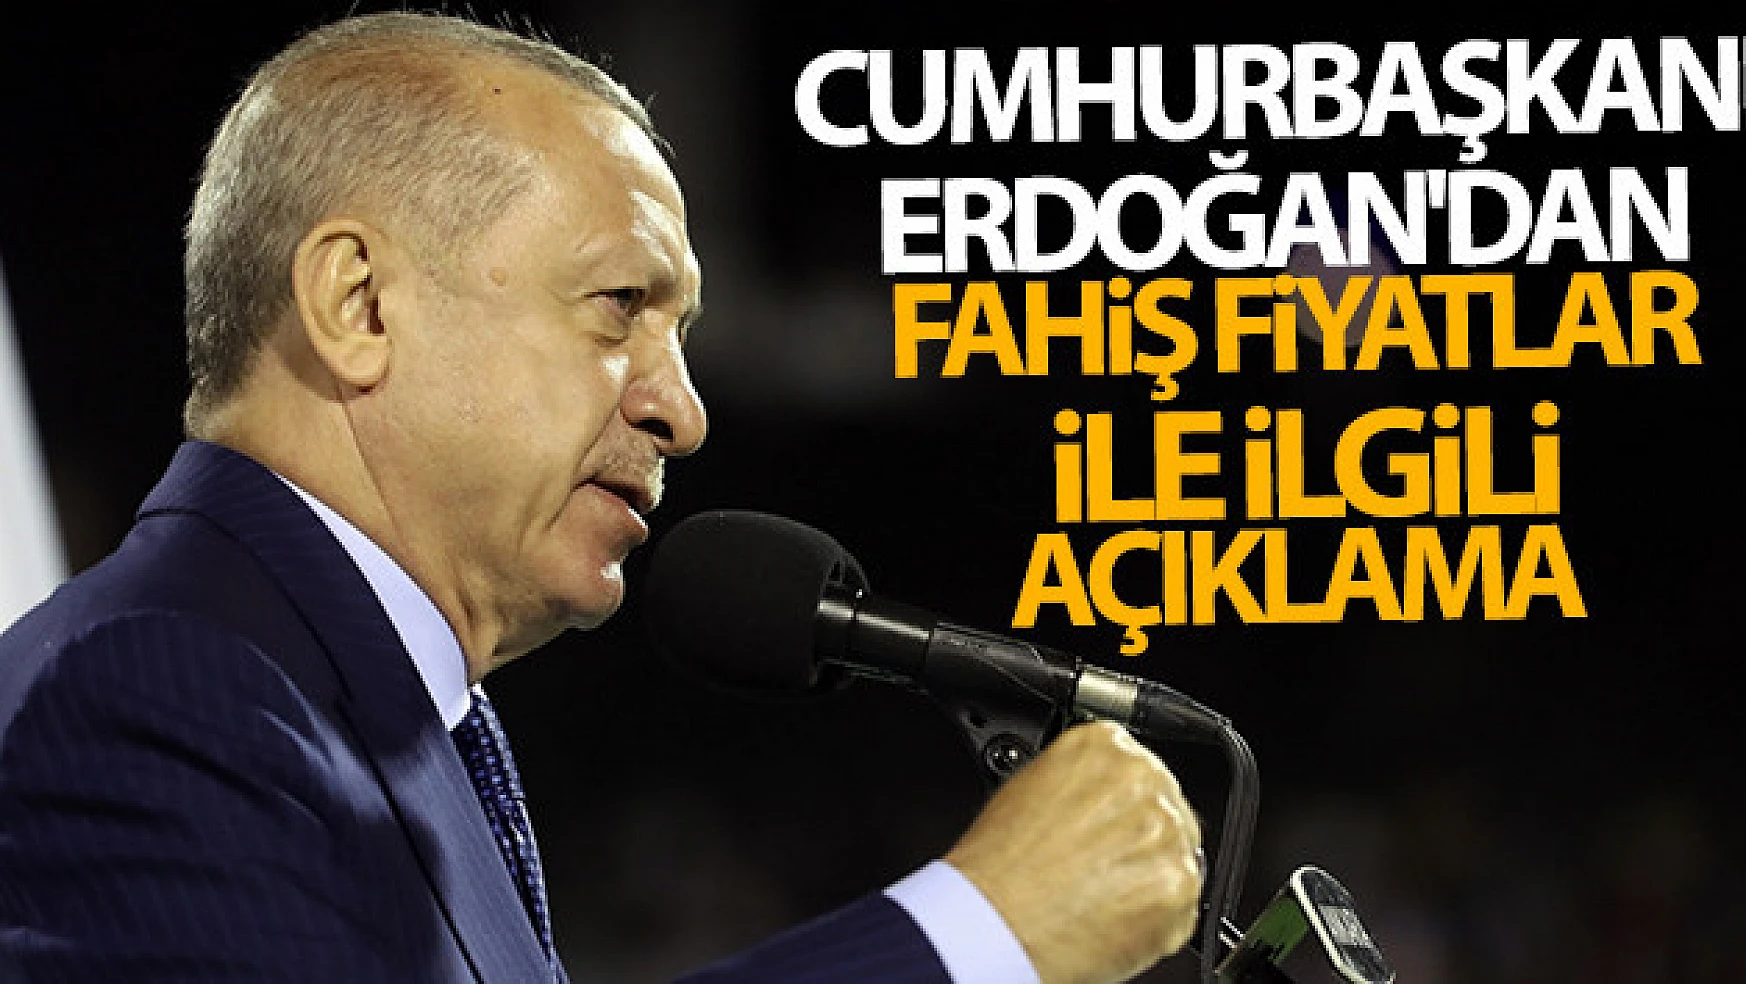 Cumhurbaşkanı Erdoğan'dan fahiş fiyatlar ile ilgili açıklama